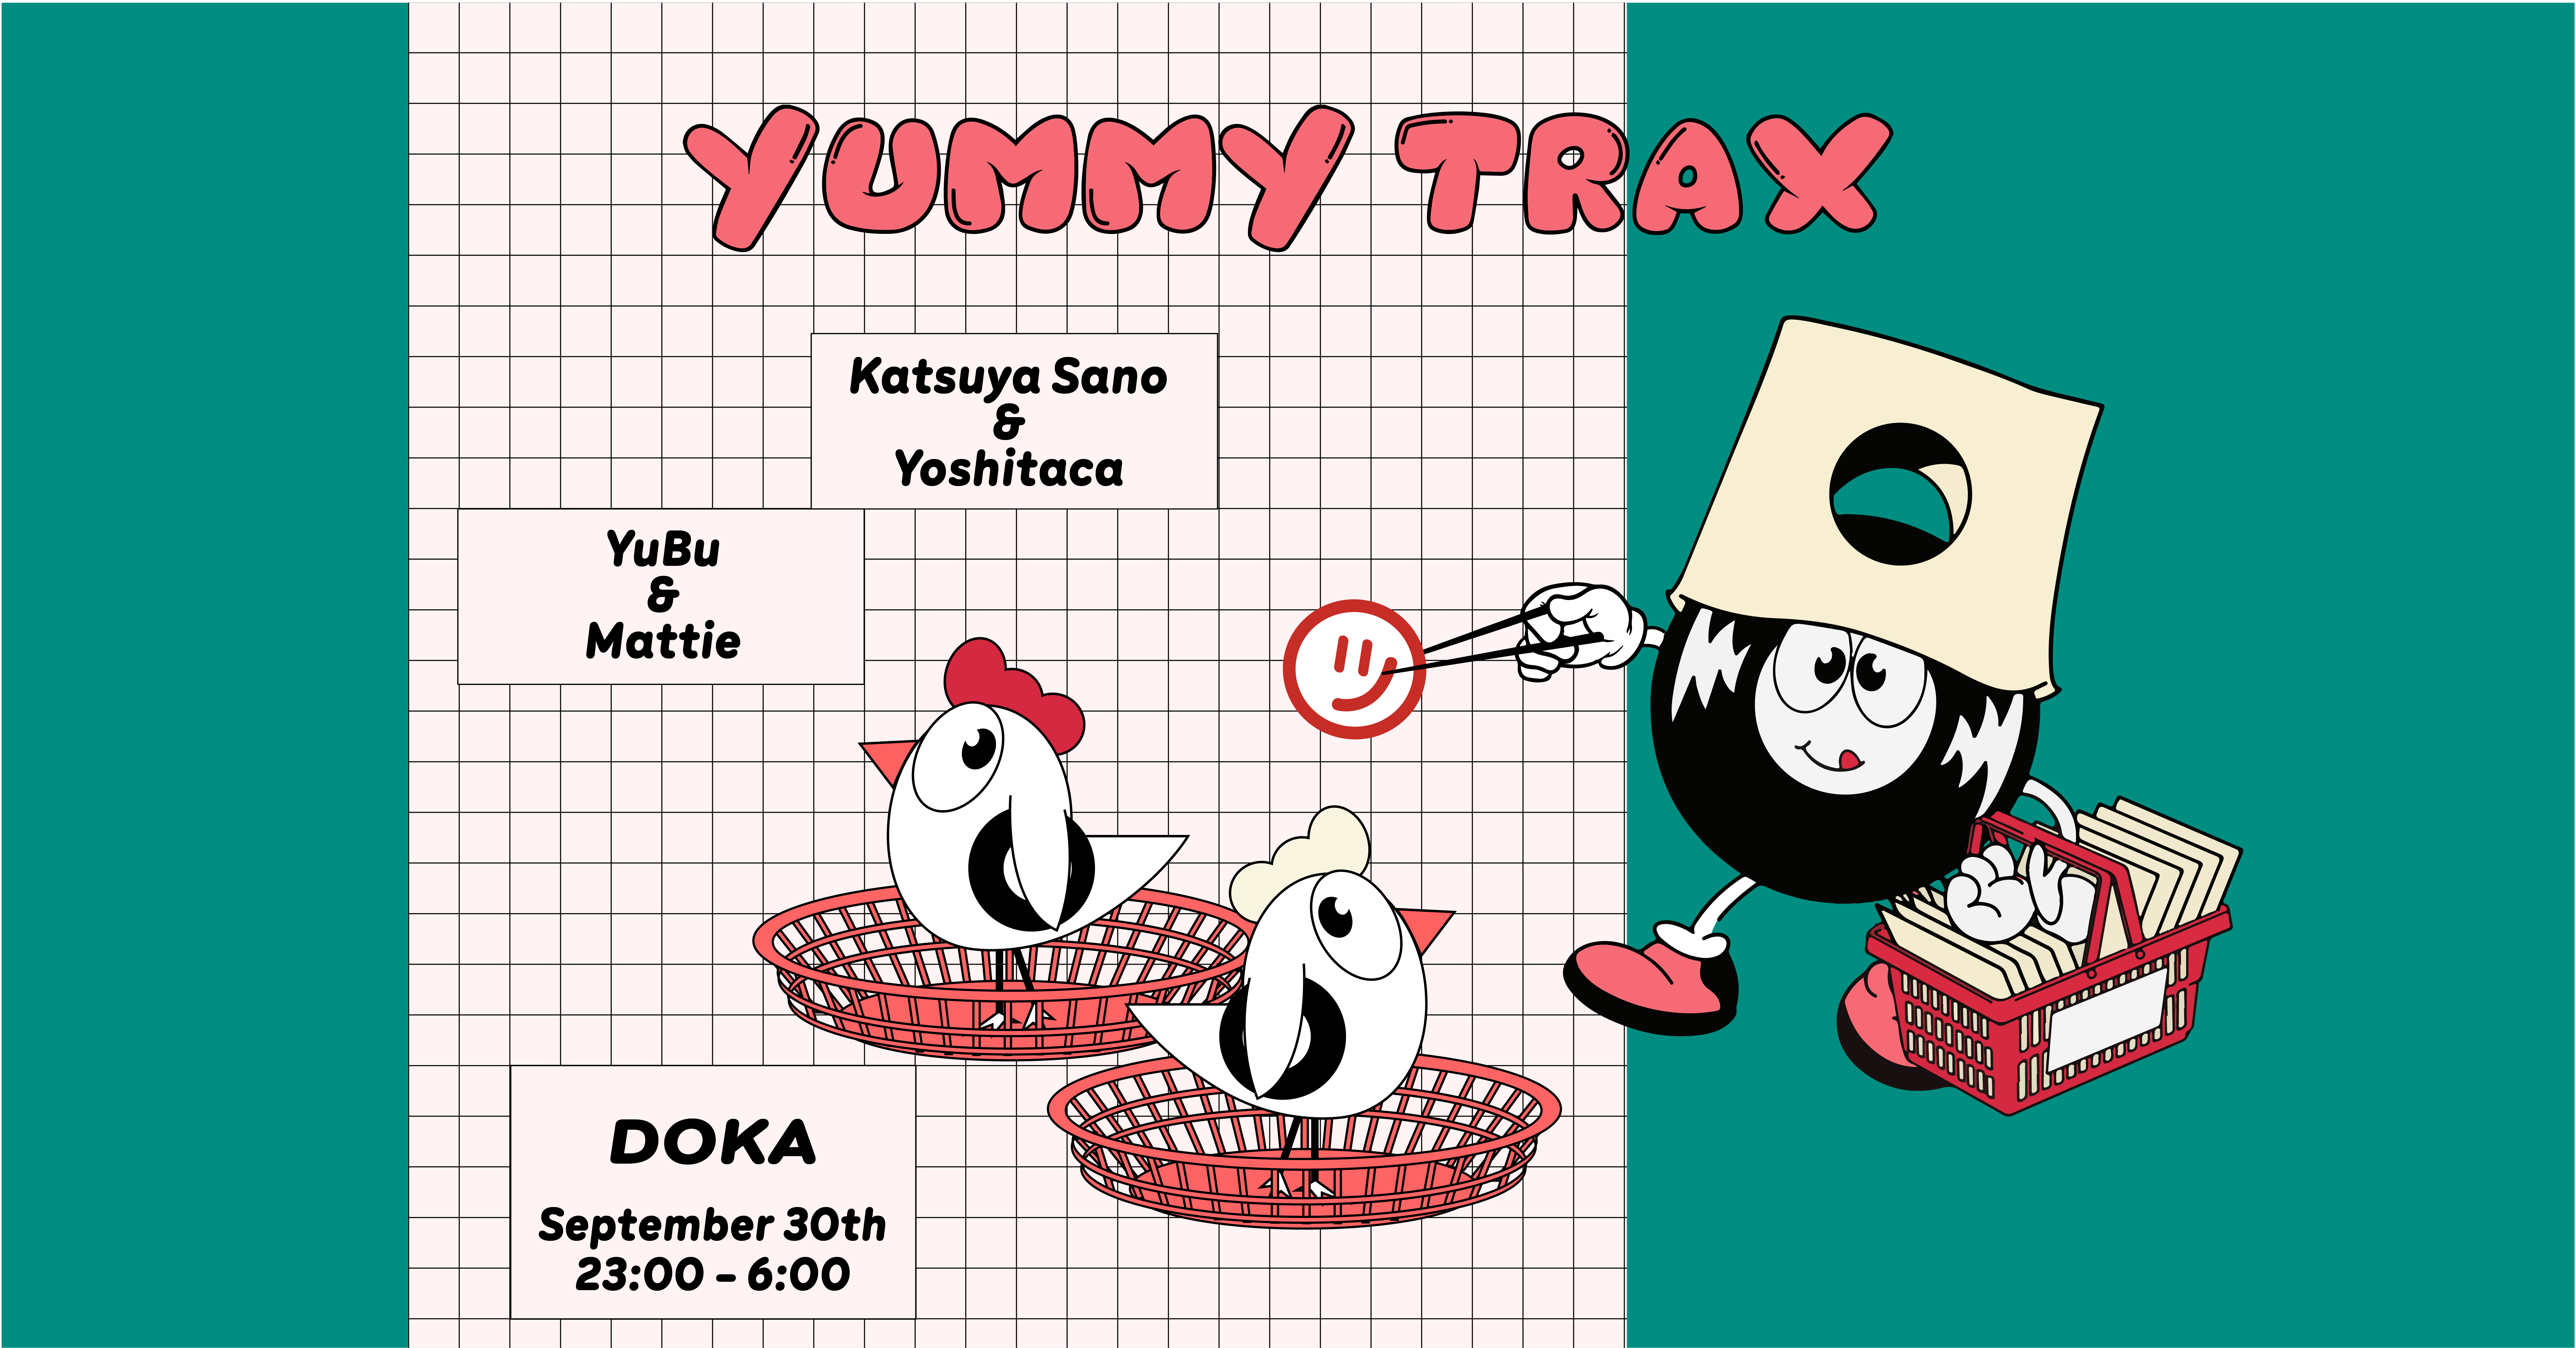 Yummy Trax with Katsuya Sano & Yoshitaca - Página frontal